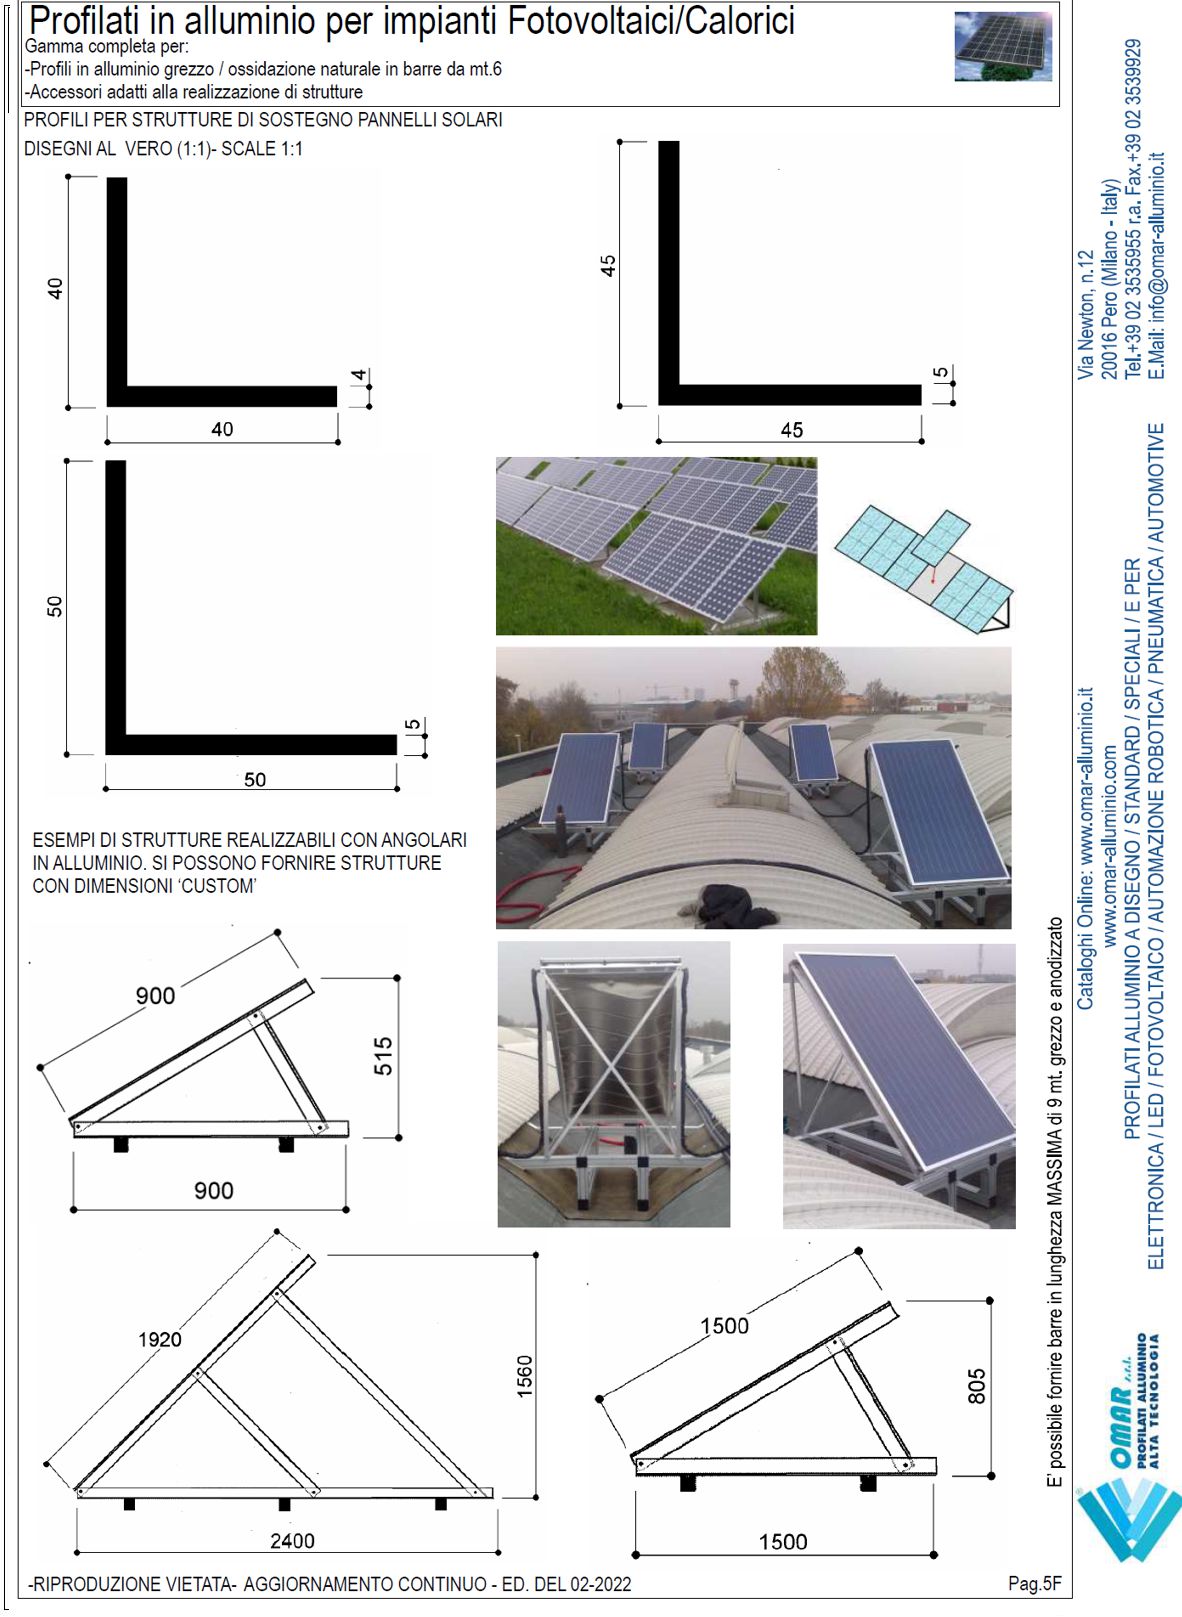 angolari in alluminio per impianti fotovoltaici